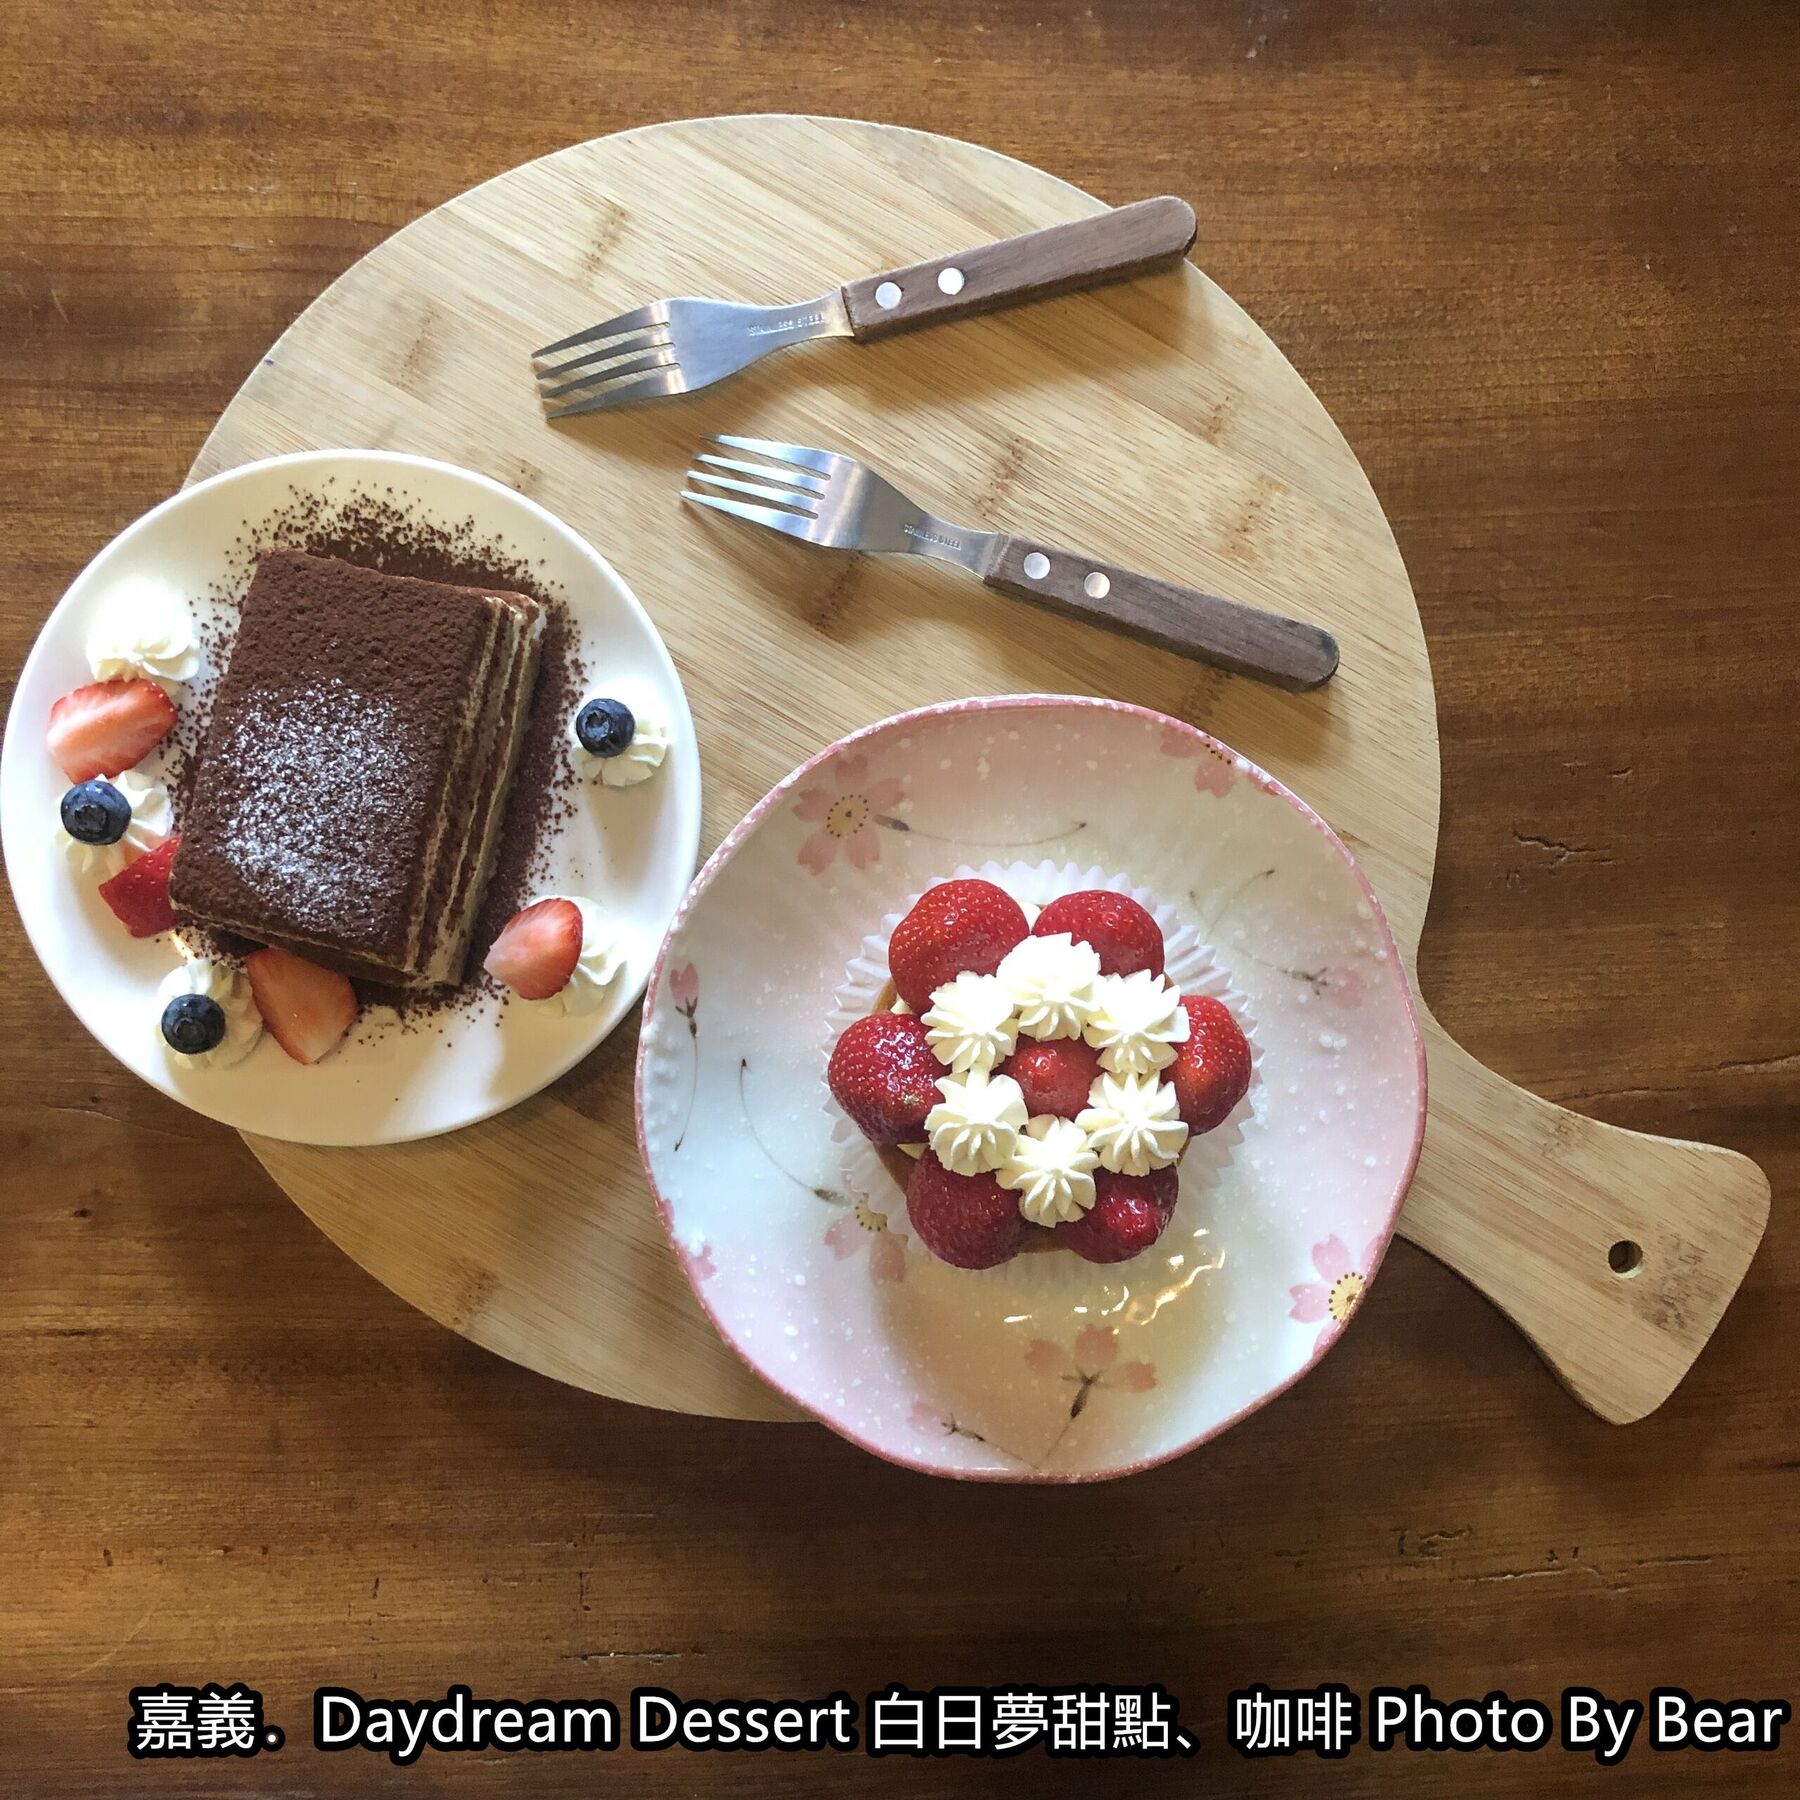 【嘉義】「Daydream Dessert 白日夢甜點、咖啡．隱藏巷弄裡的老宅咖啡（日式懷舊風/手作甜品/芋頭盒子/氣泡飲/大雅路二段）」